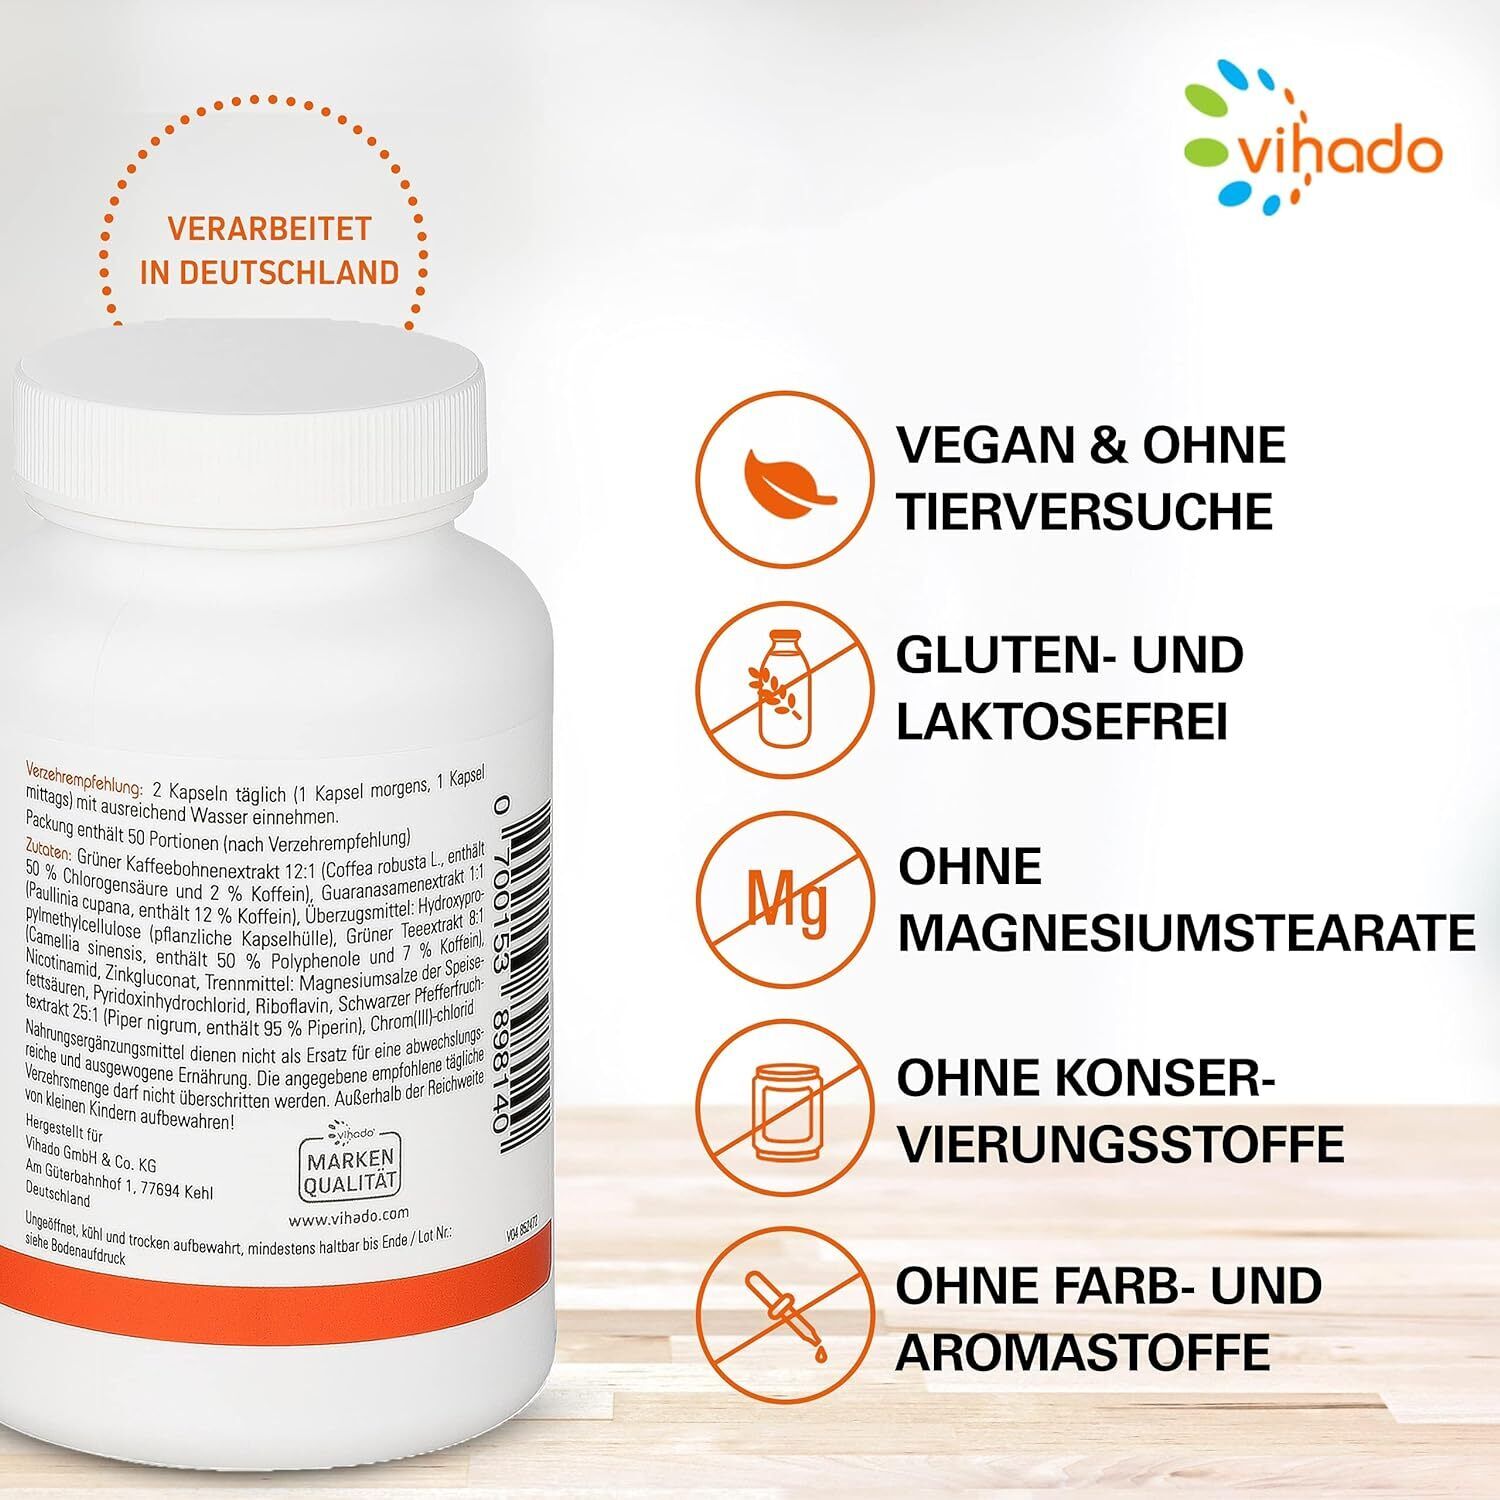 Vihado F-BDY 2.0 Kapseln Für den Stoffwechsel Mit Pflanzenstoffen Vitaminen